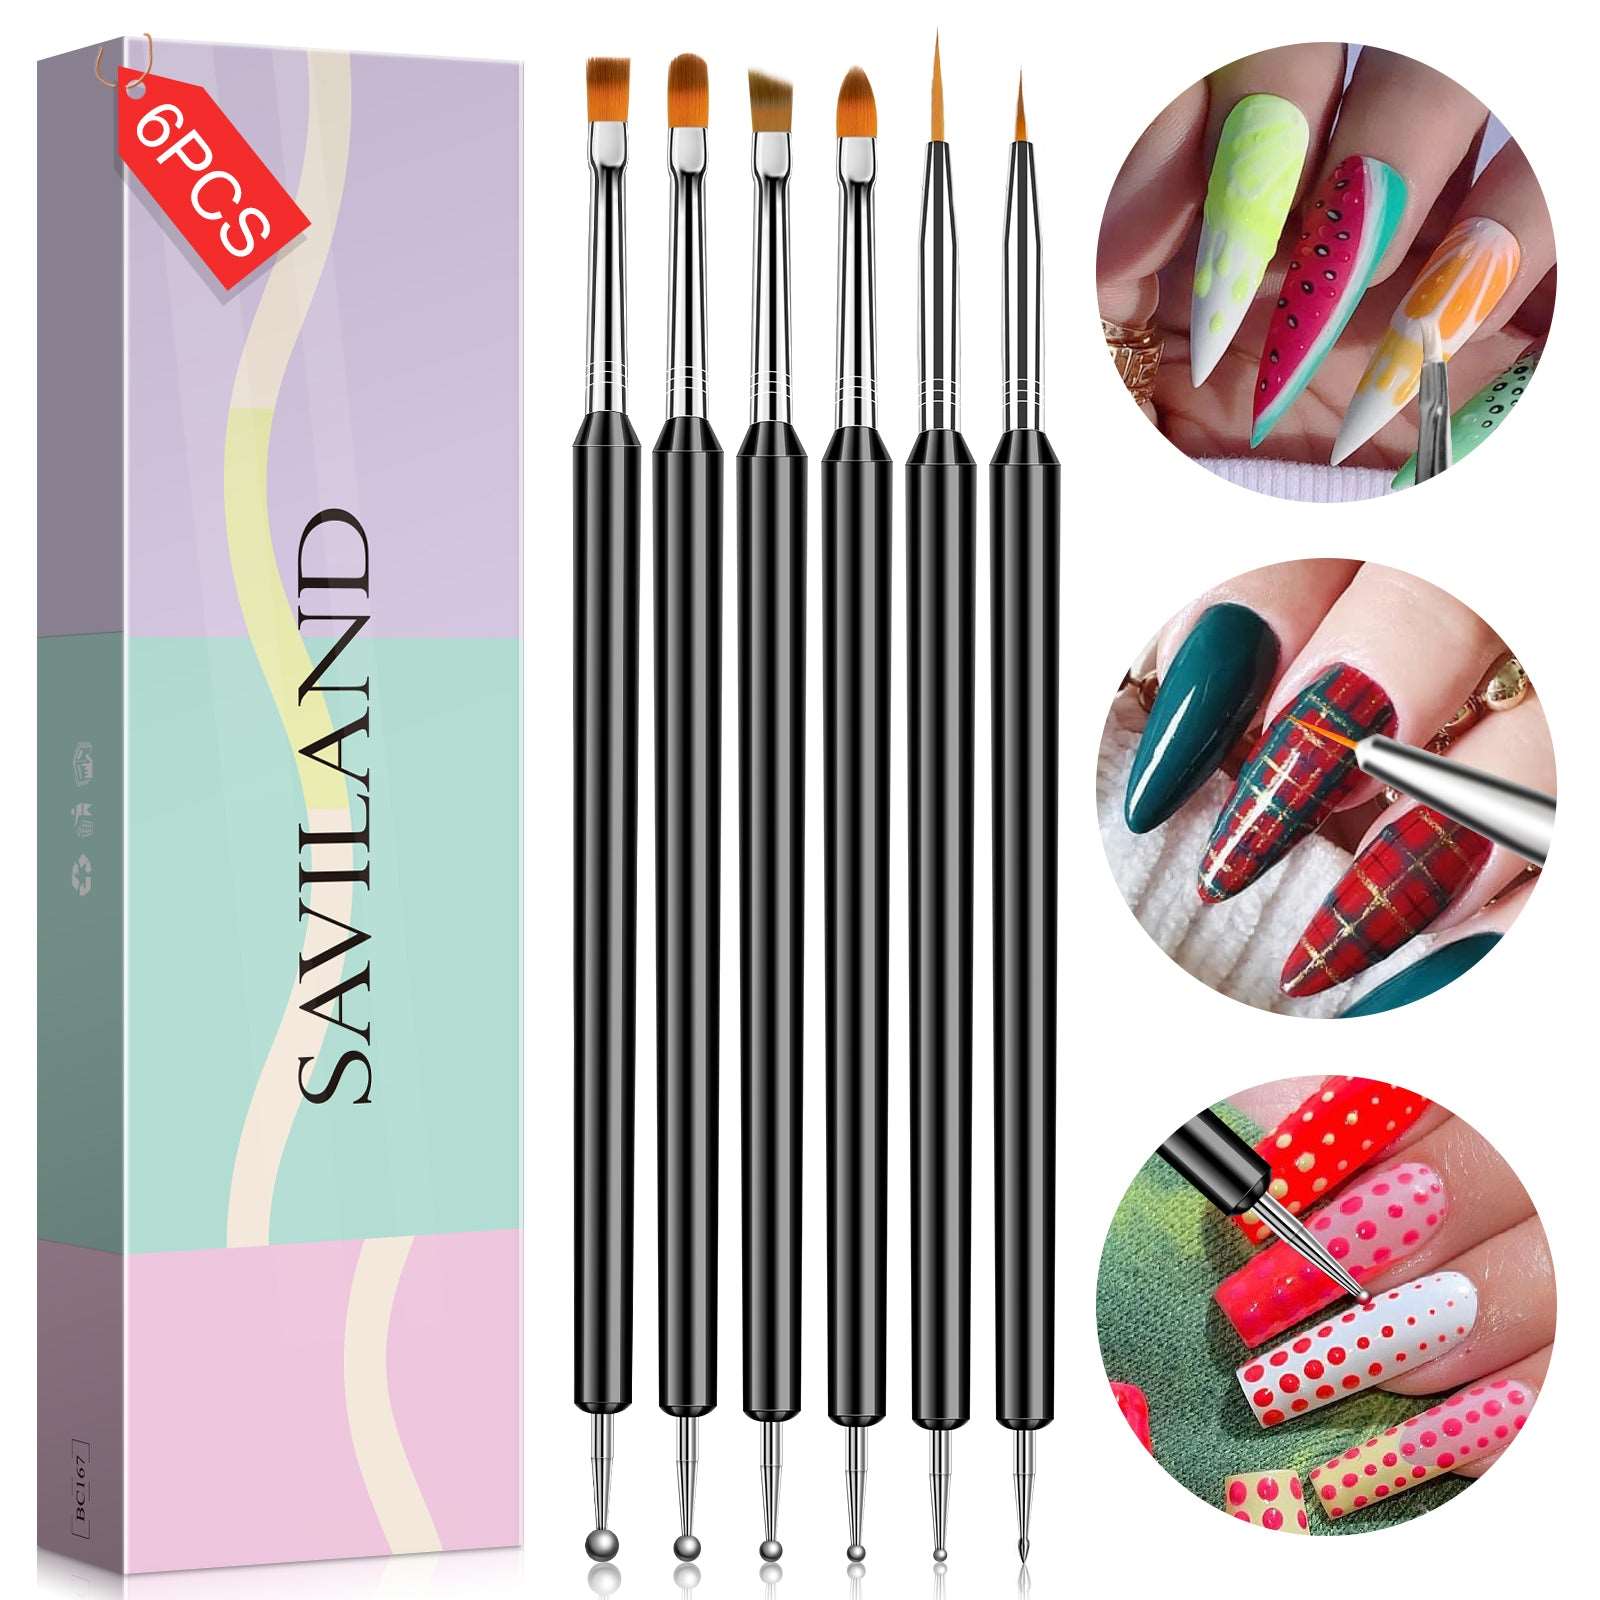 Saviland Nail Art Brushes Set - 6pcs Double-End Nail Art Tools Professional  Nail Art Brushes Kit Painting Dotting Line Pen for Gel Polish Nail Design